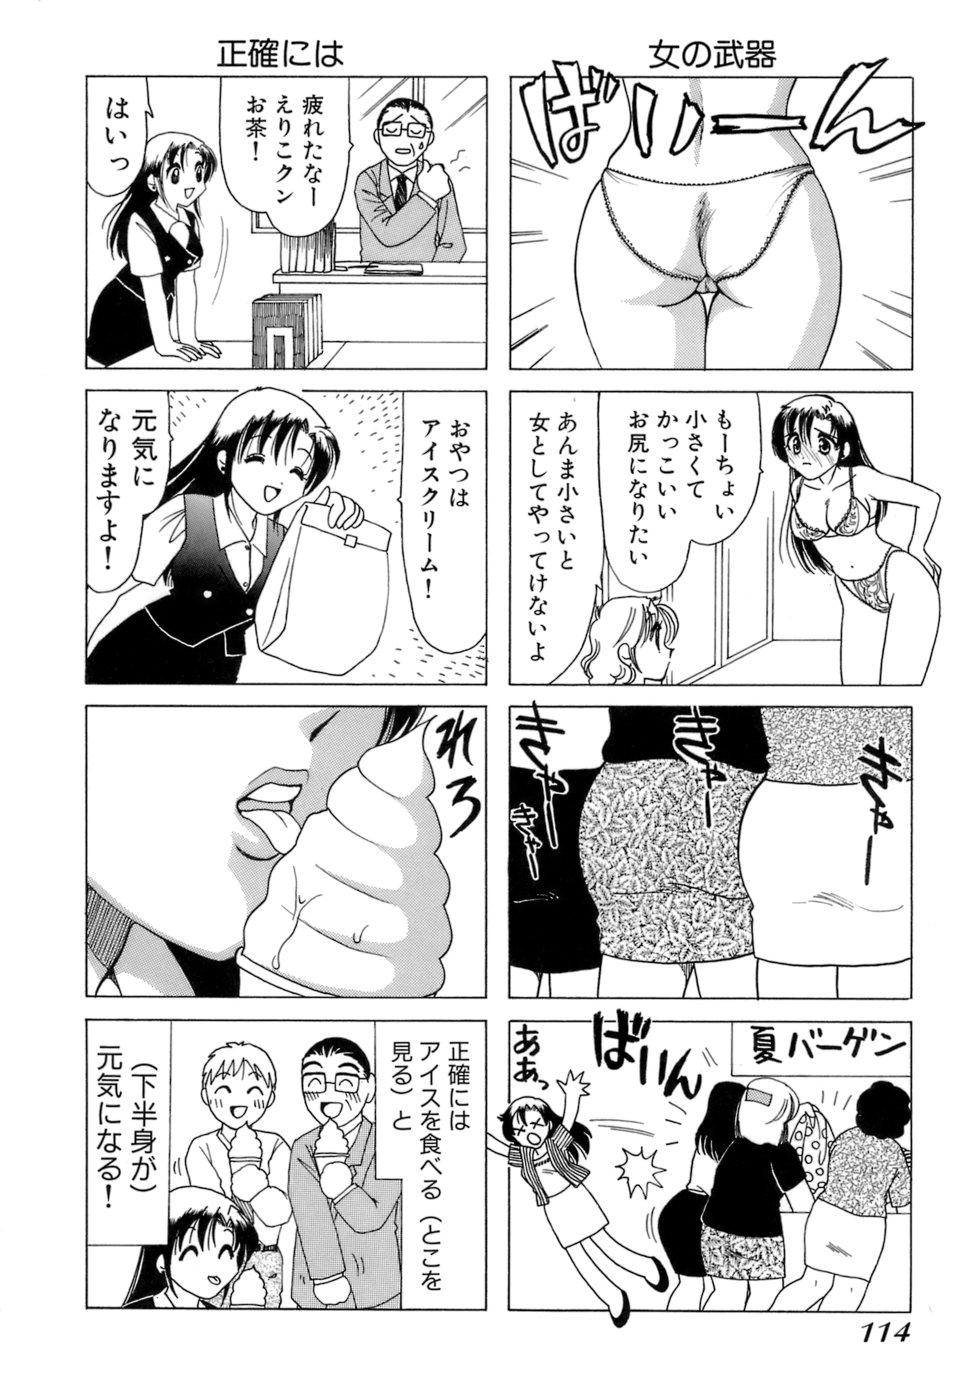 Eriko-kun, Ocha!! Vol.01 117